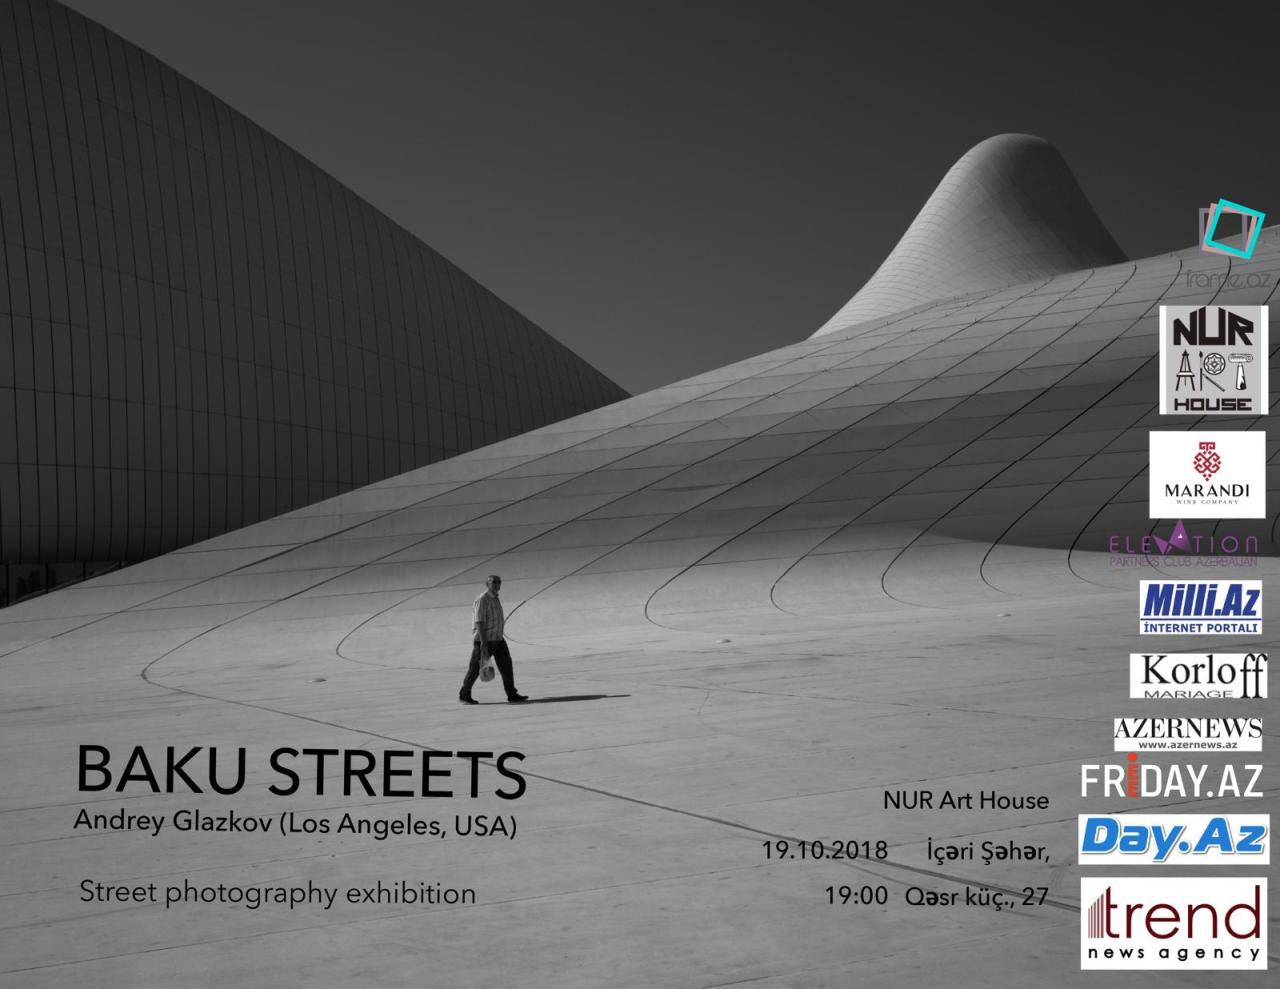 В NUR Art House пройдет фотовыставка Андрея Глазкова "Baku streets"